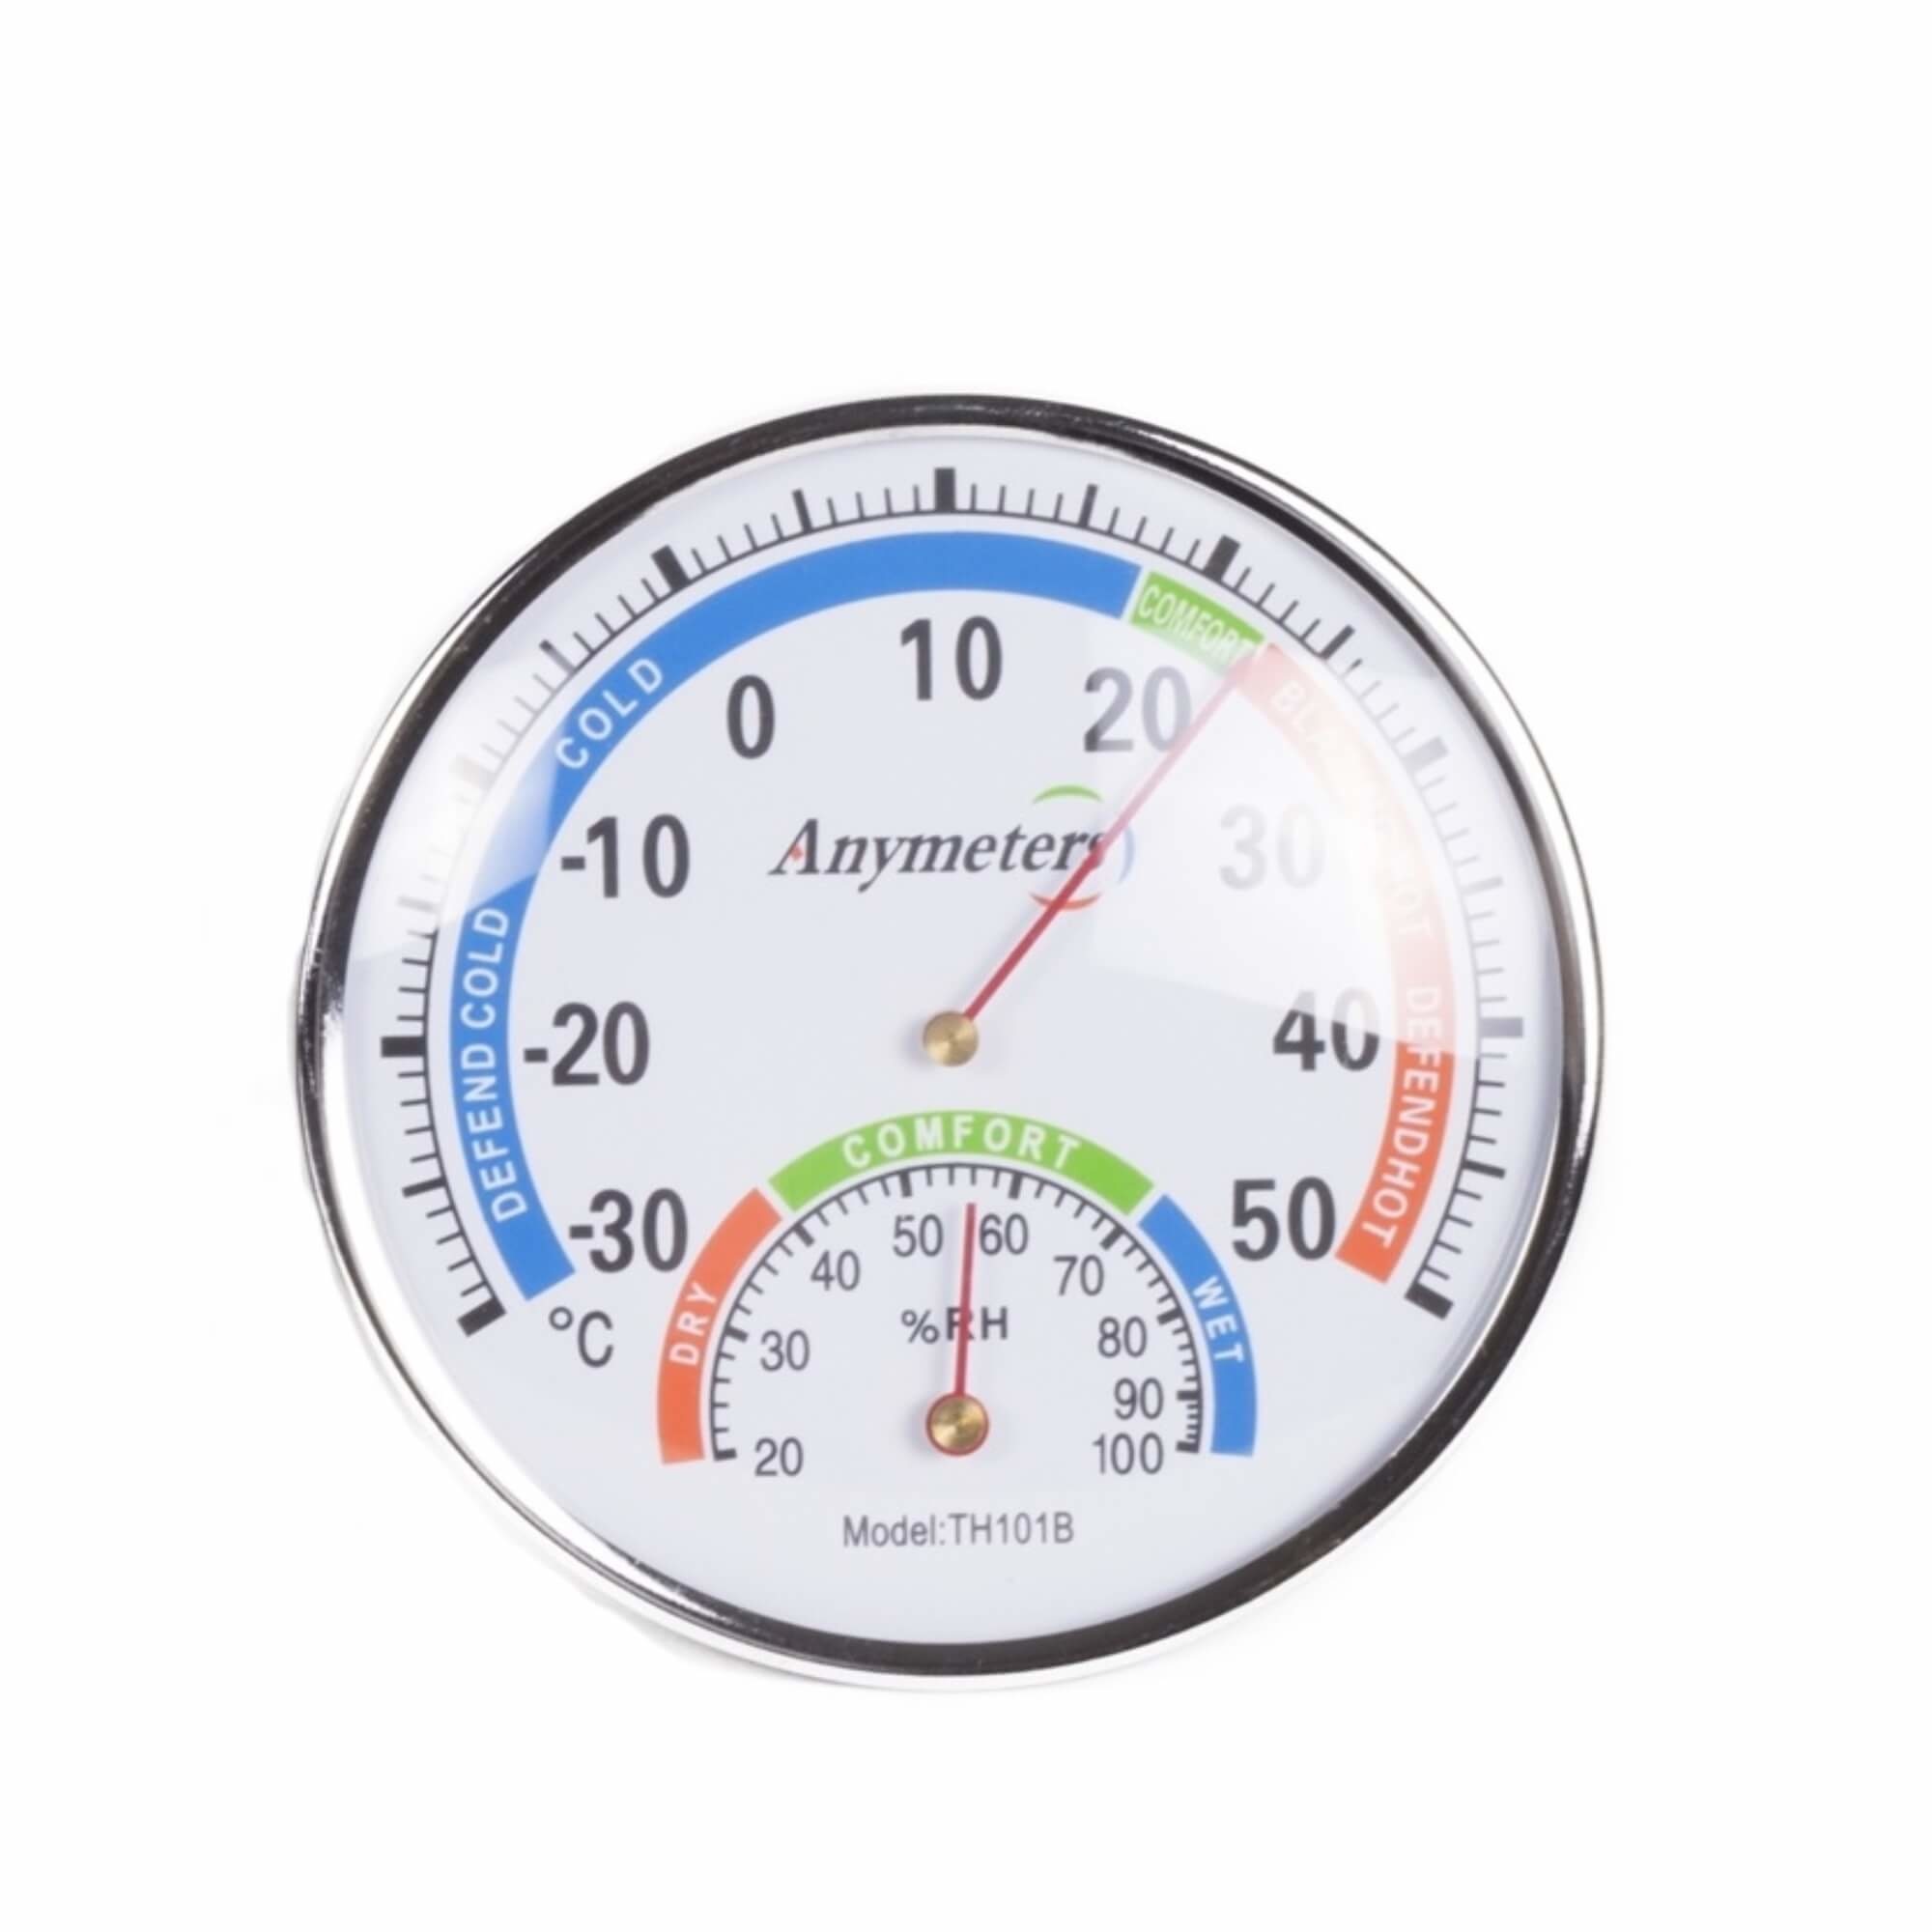 Buskruit uitzending hartstochtelijk Benson Wand Analoge Thermometer en Hygrometer - Ø 12.9 cm kopen? - 2Cheap